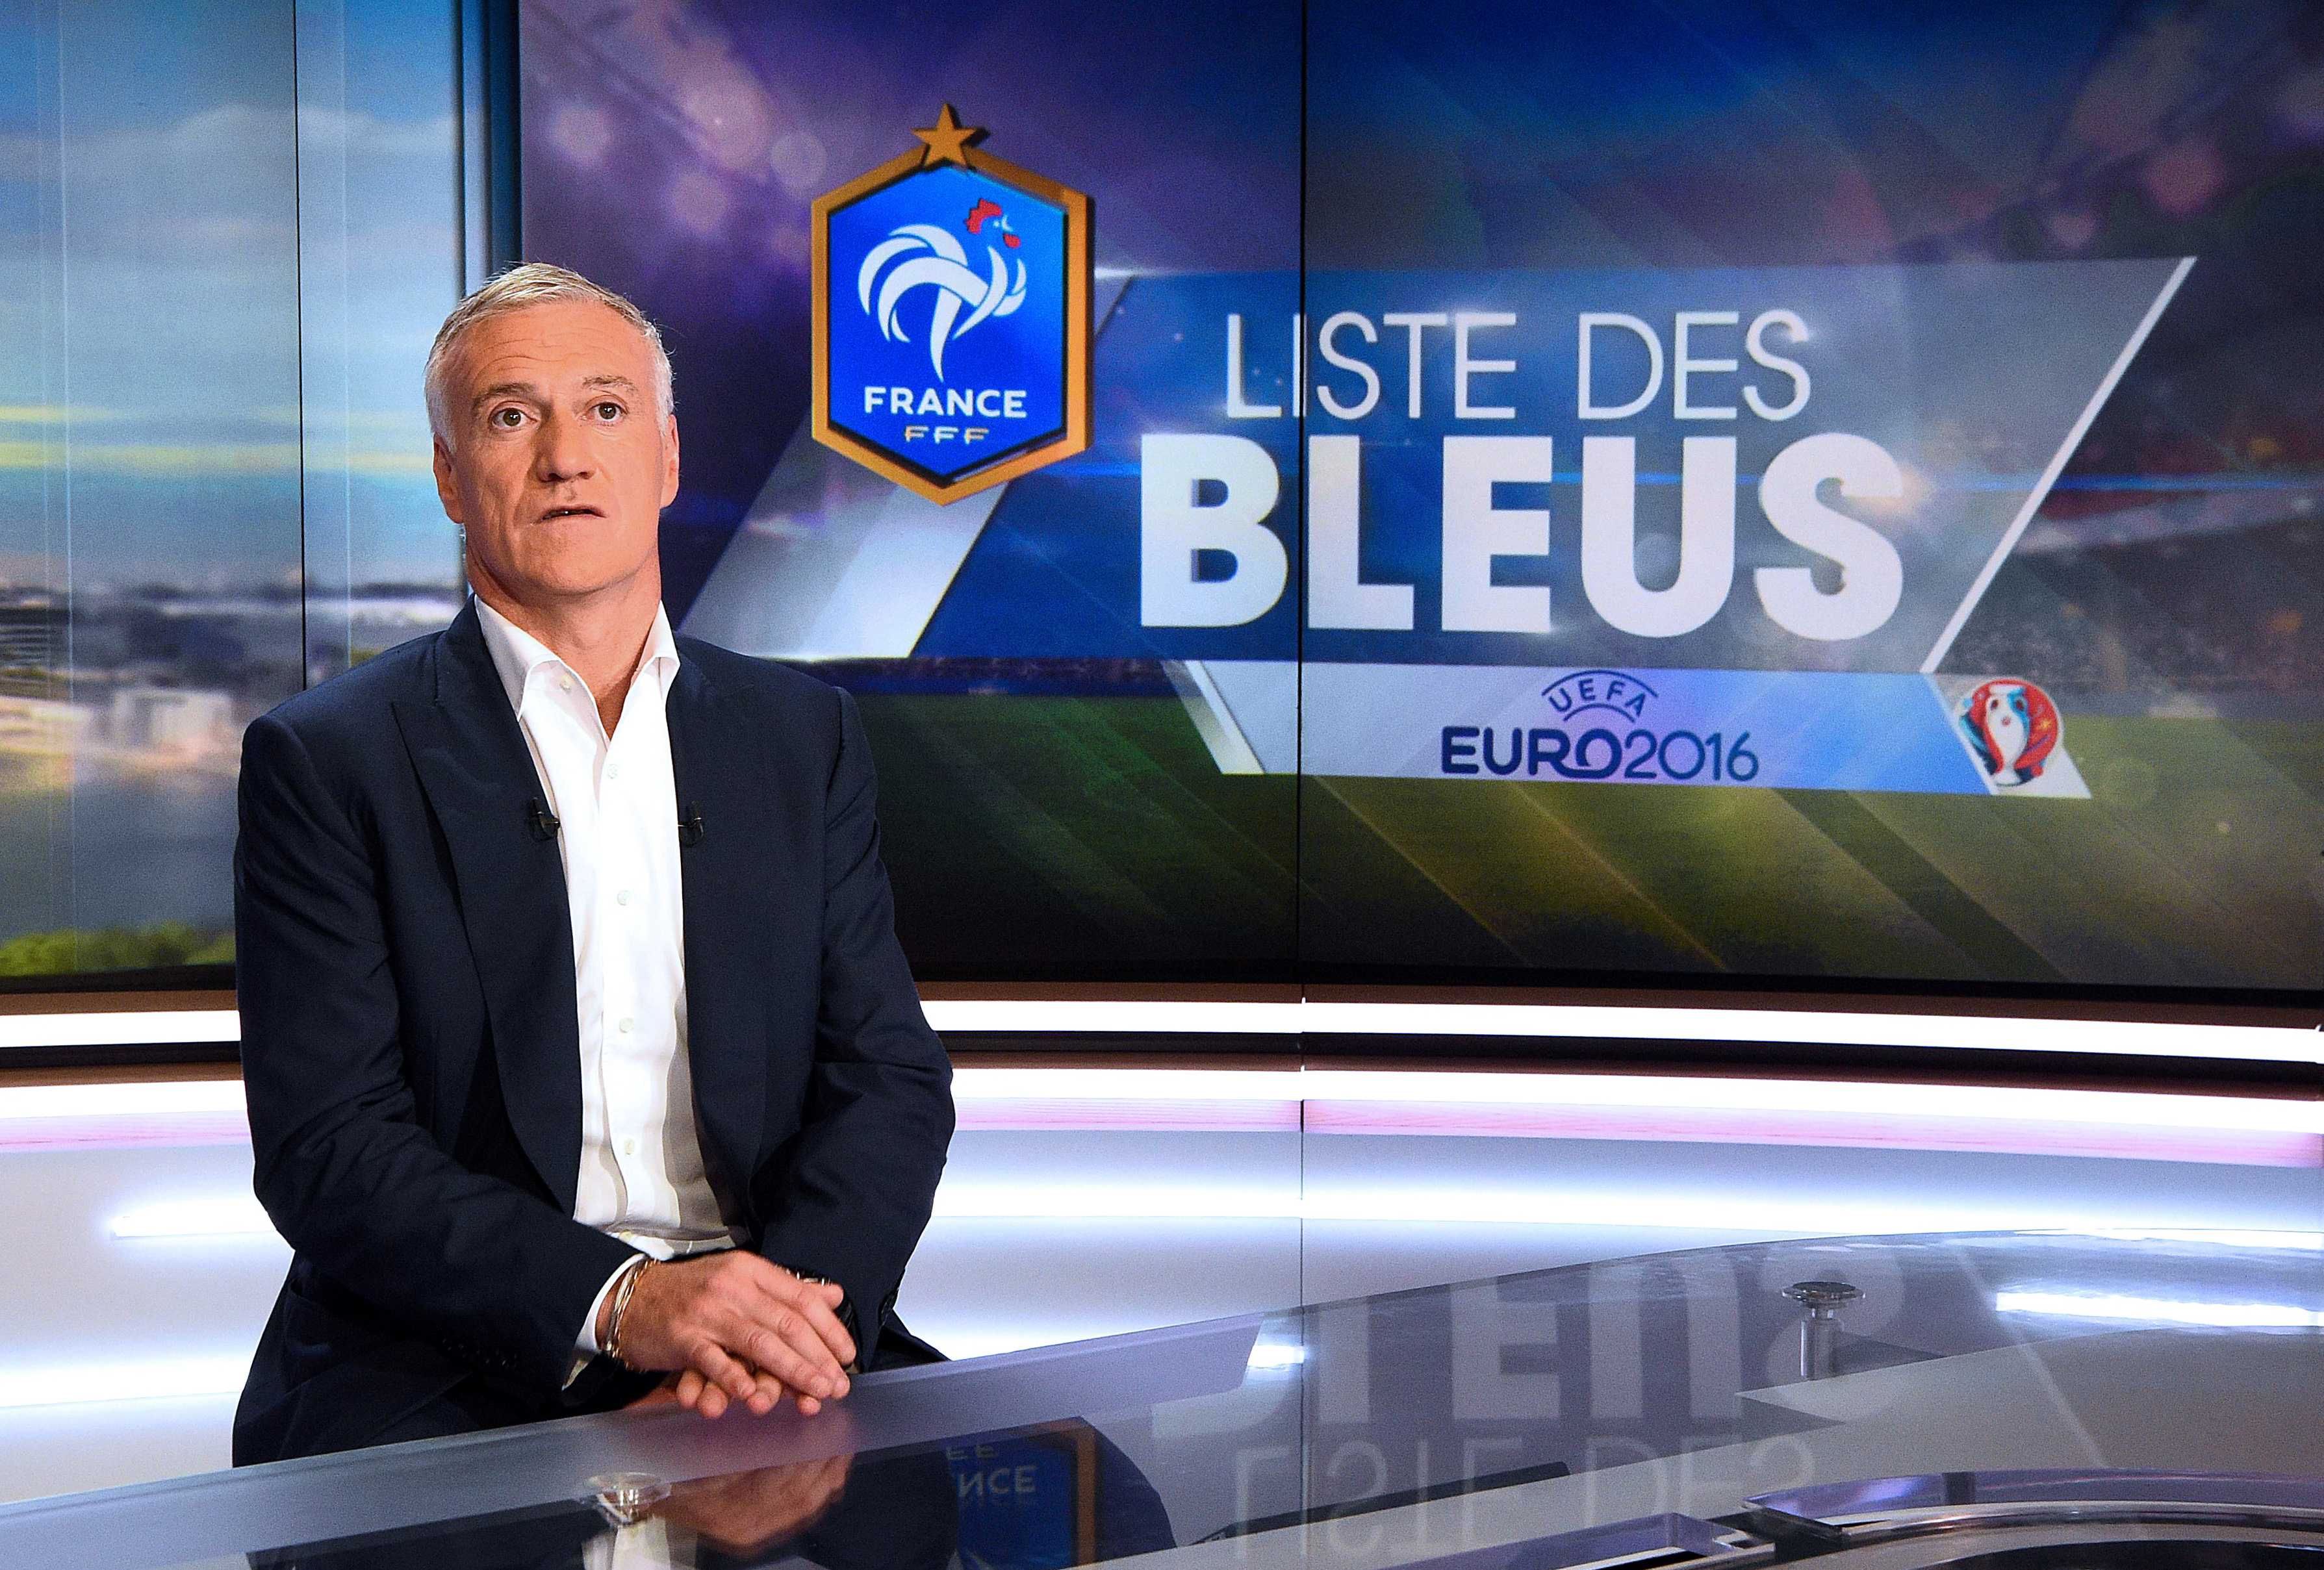 HLV đội tuyển Pháp Deschamps trả lời phỏng vấn một kênh truyền hình Pháp trước thềm Euro 2016. Ảnh: Reuters